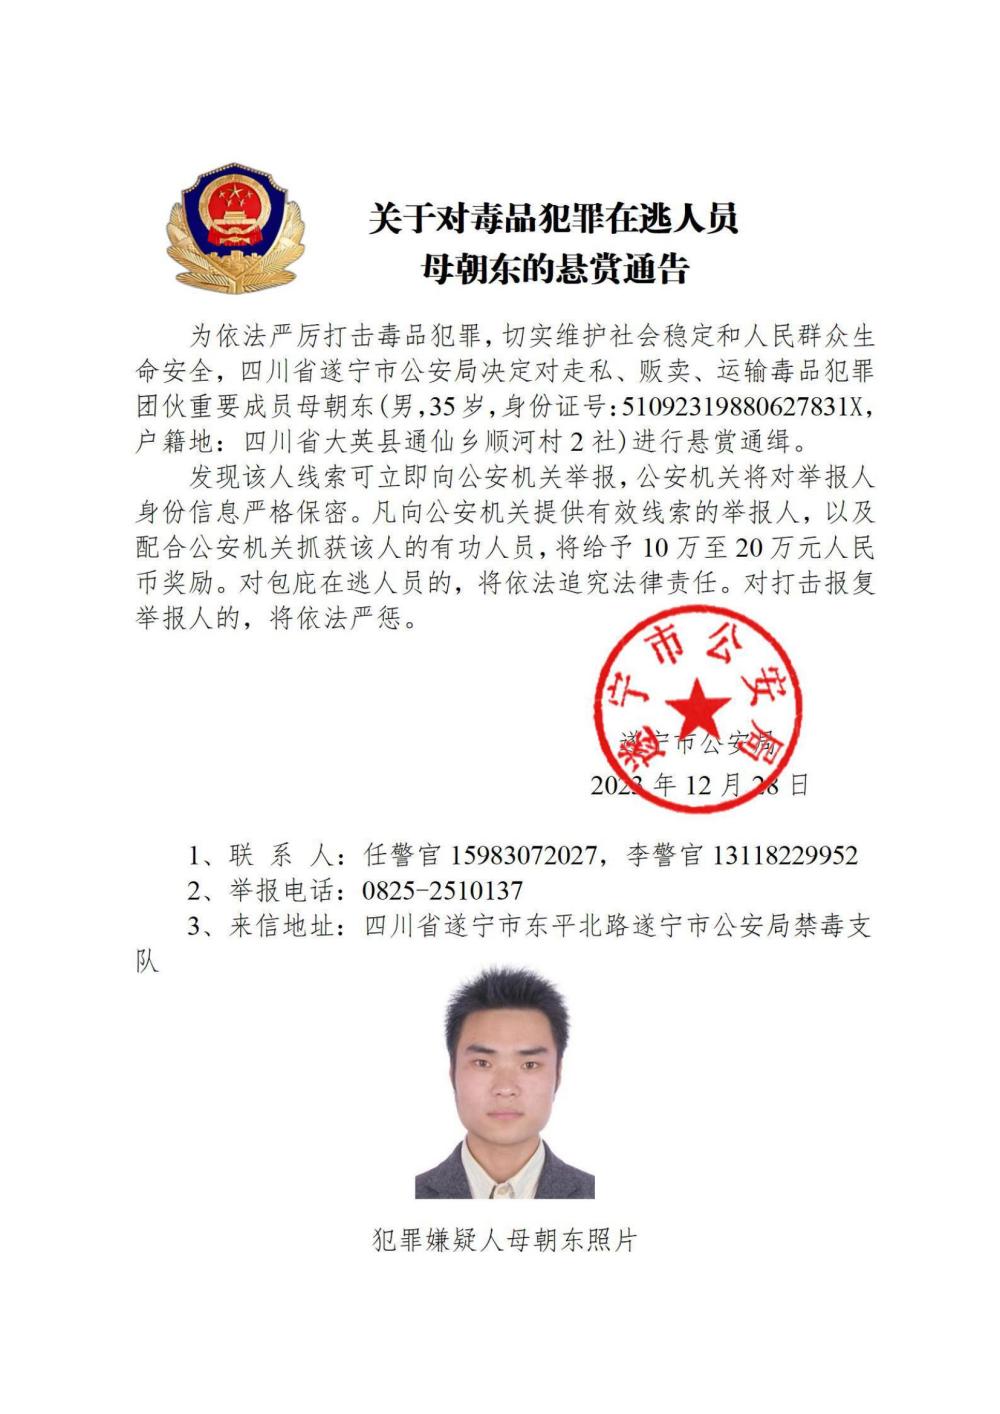 公安部悬红通辑10名藏匿缅北的中国毒贩。(新华社)